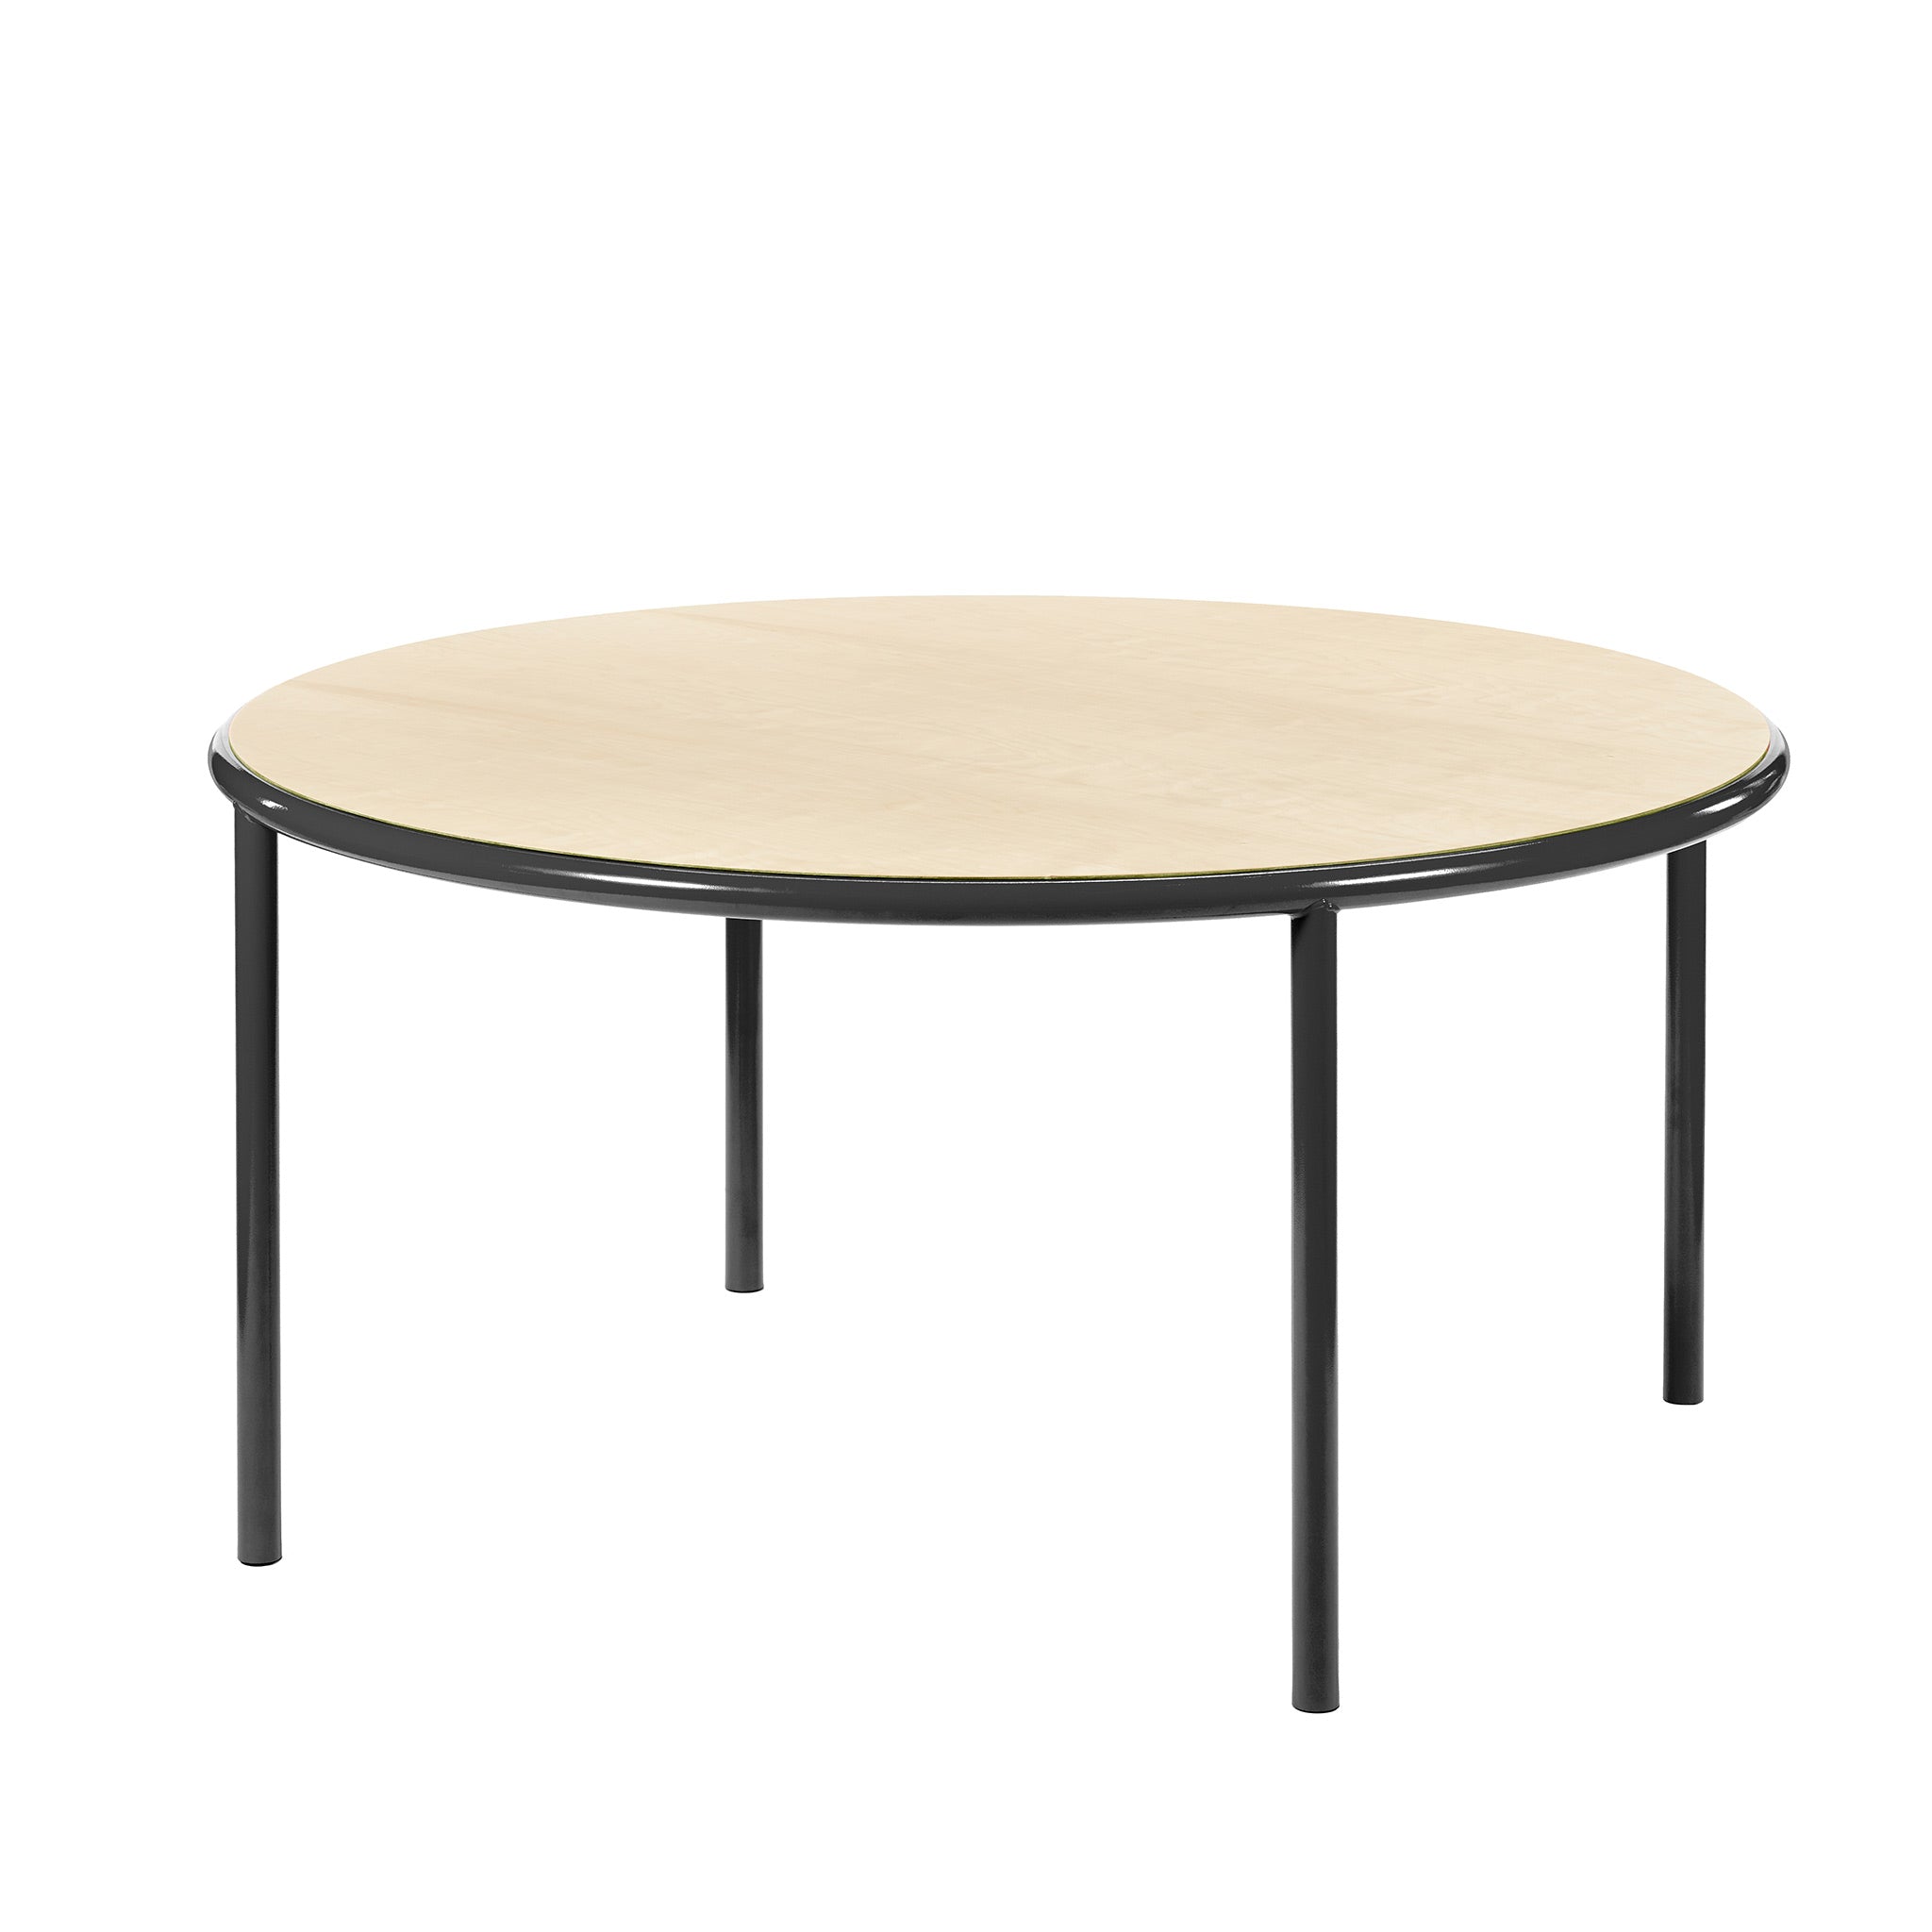 Valerie Objects Tisch | Wood round